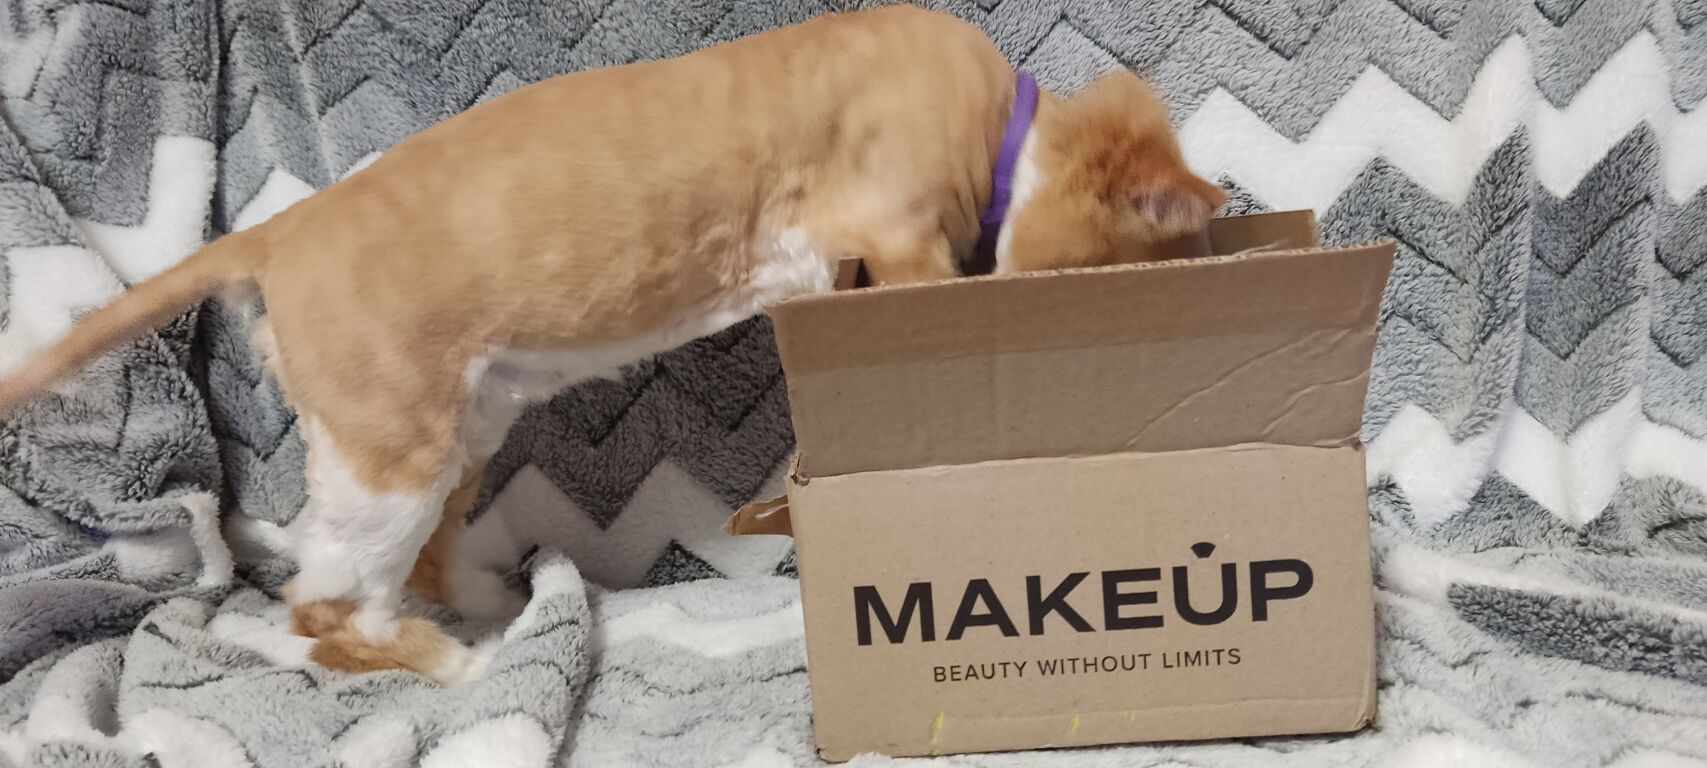 Розпаковувати з котом посилочки від MAKEUP завжди веселіше 😅😅😅